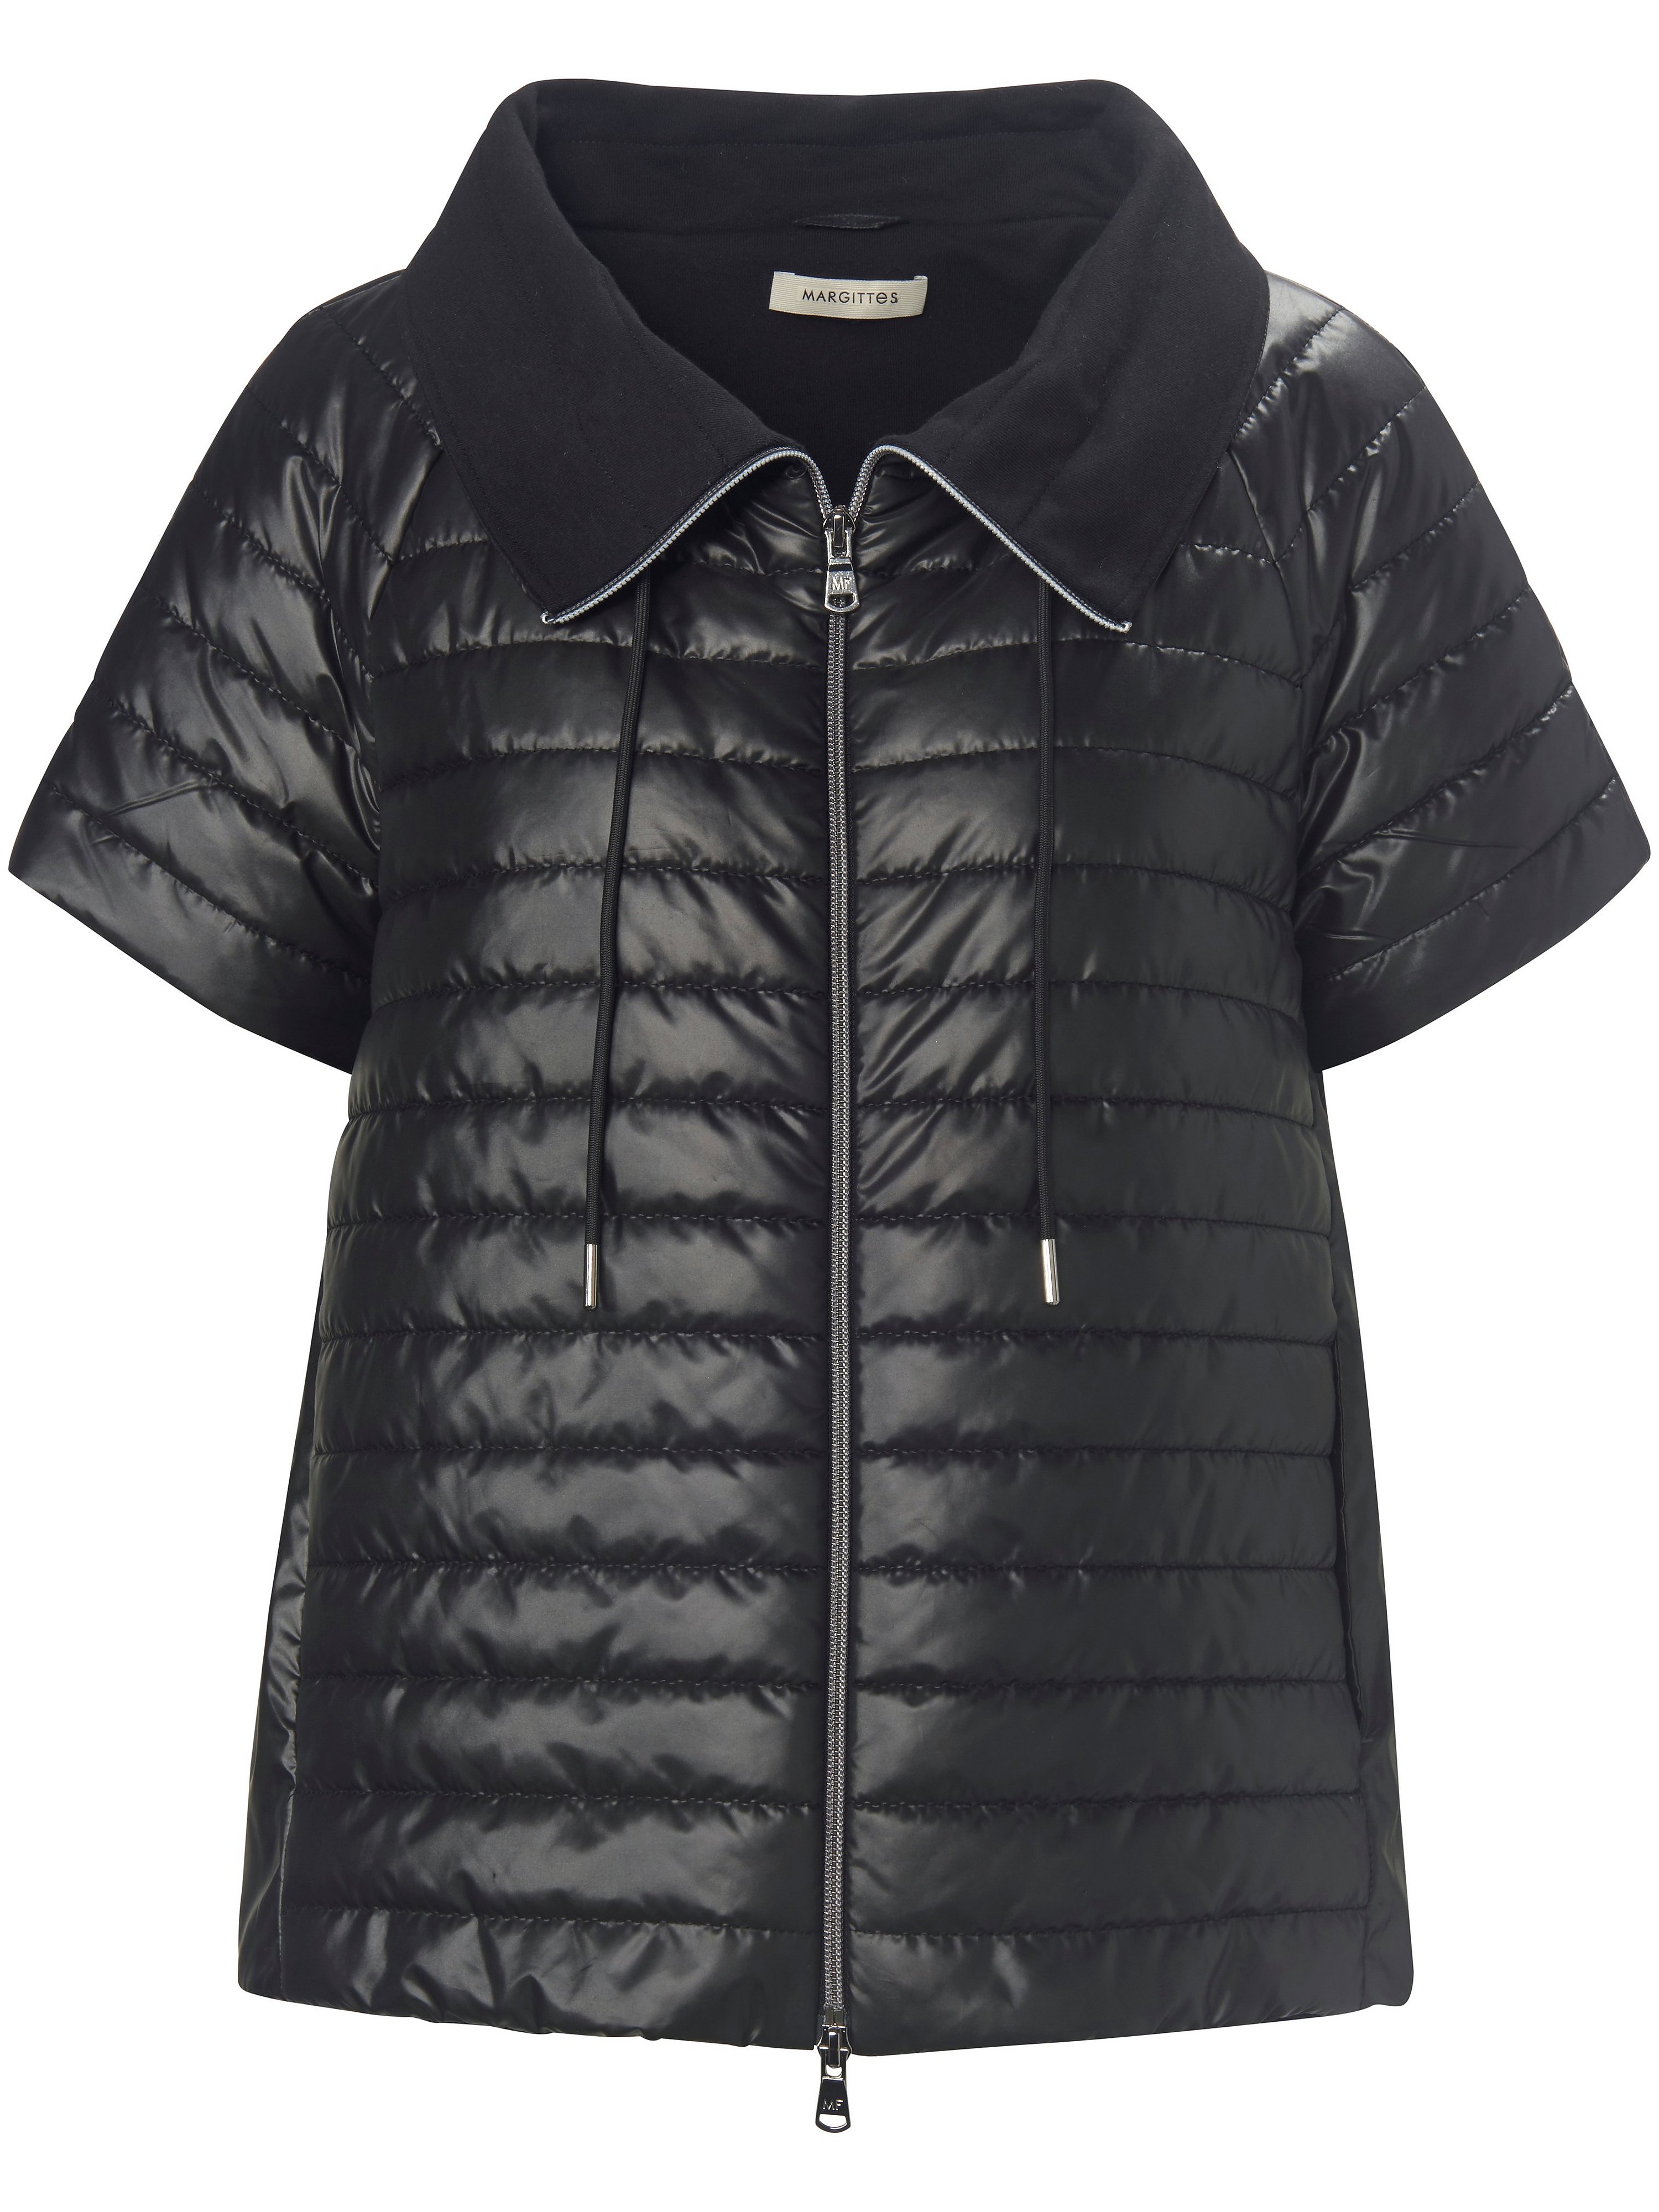 Quilted jacket Margittes black